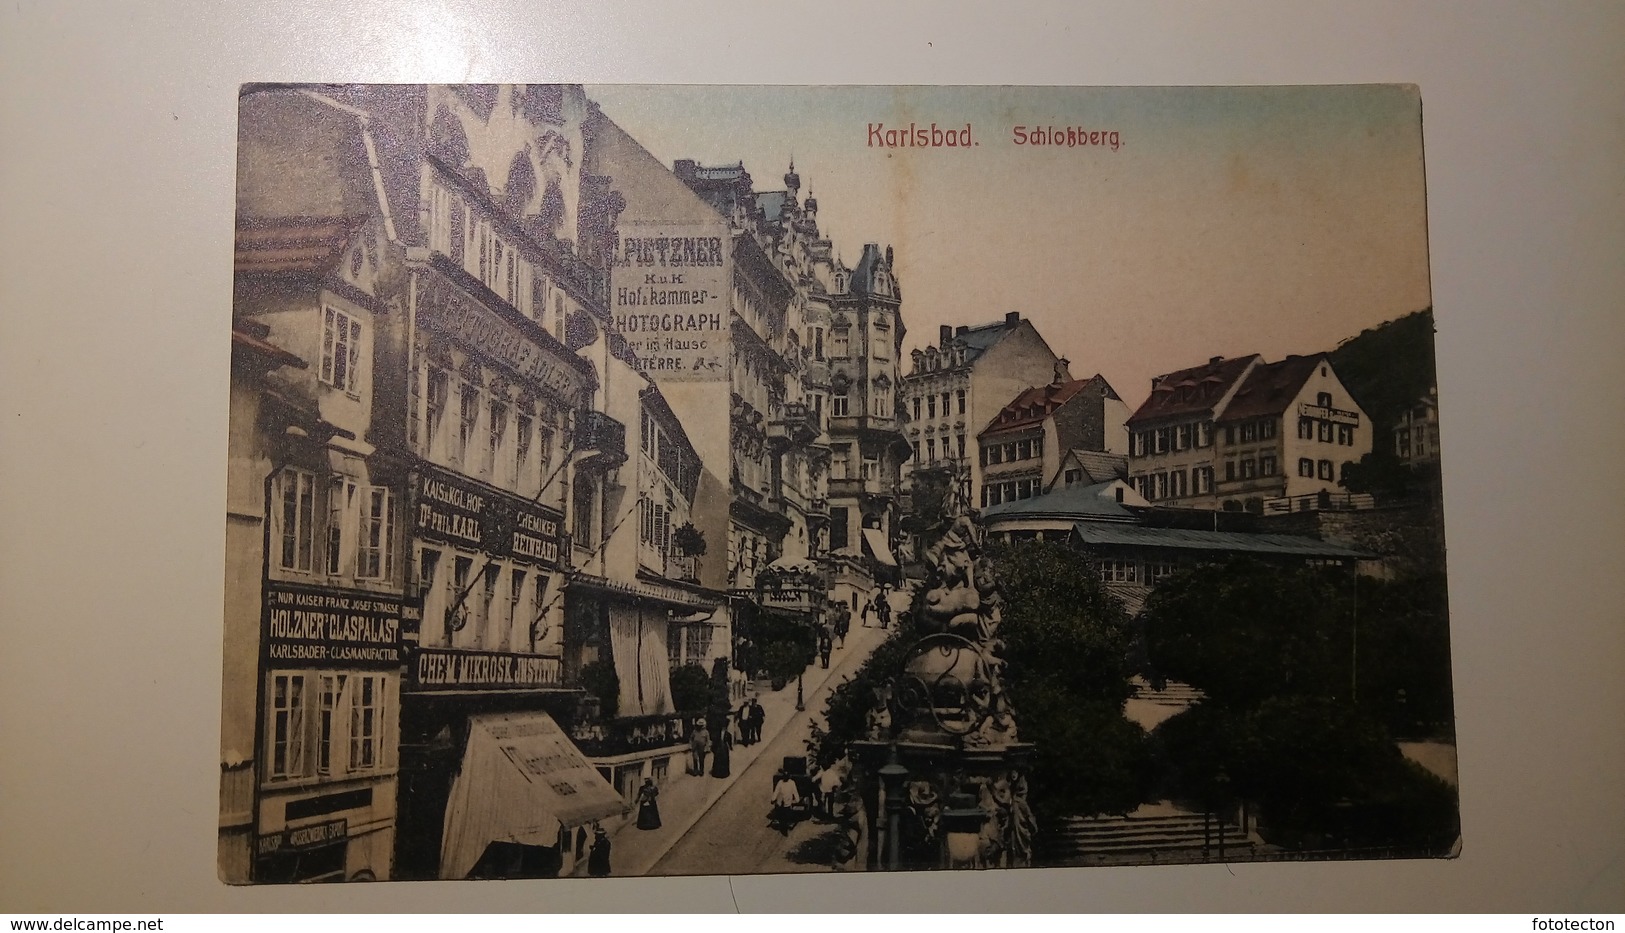 Česká Republika - Karlsbad Schloßberg - Deutschland? 1900-1920? - Tschechische Republik